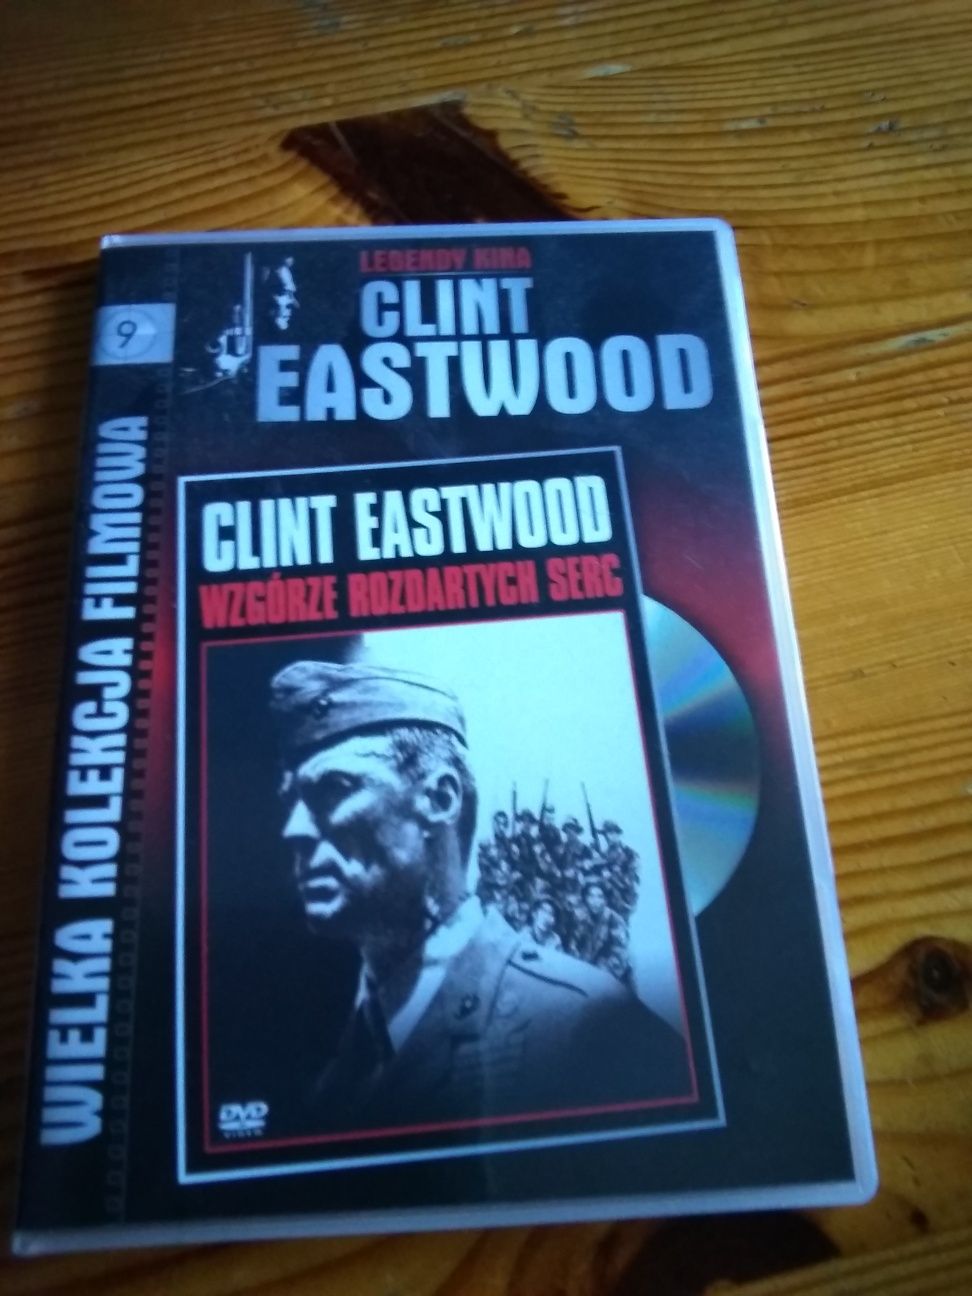 Clint Eastwood Wzgórze rozdartych sercerc